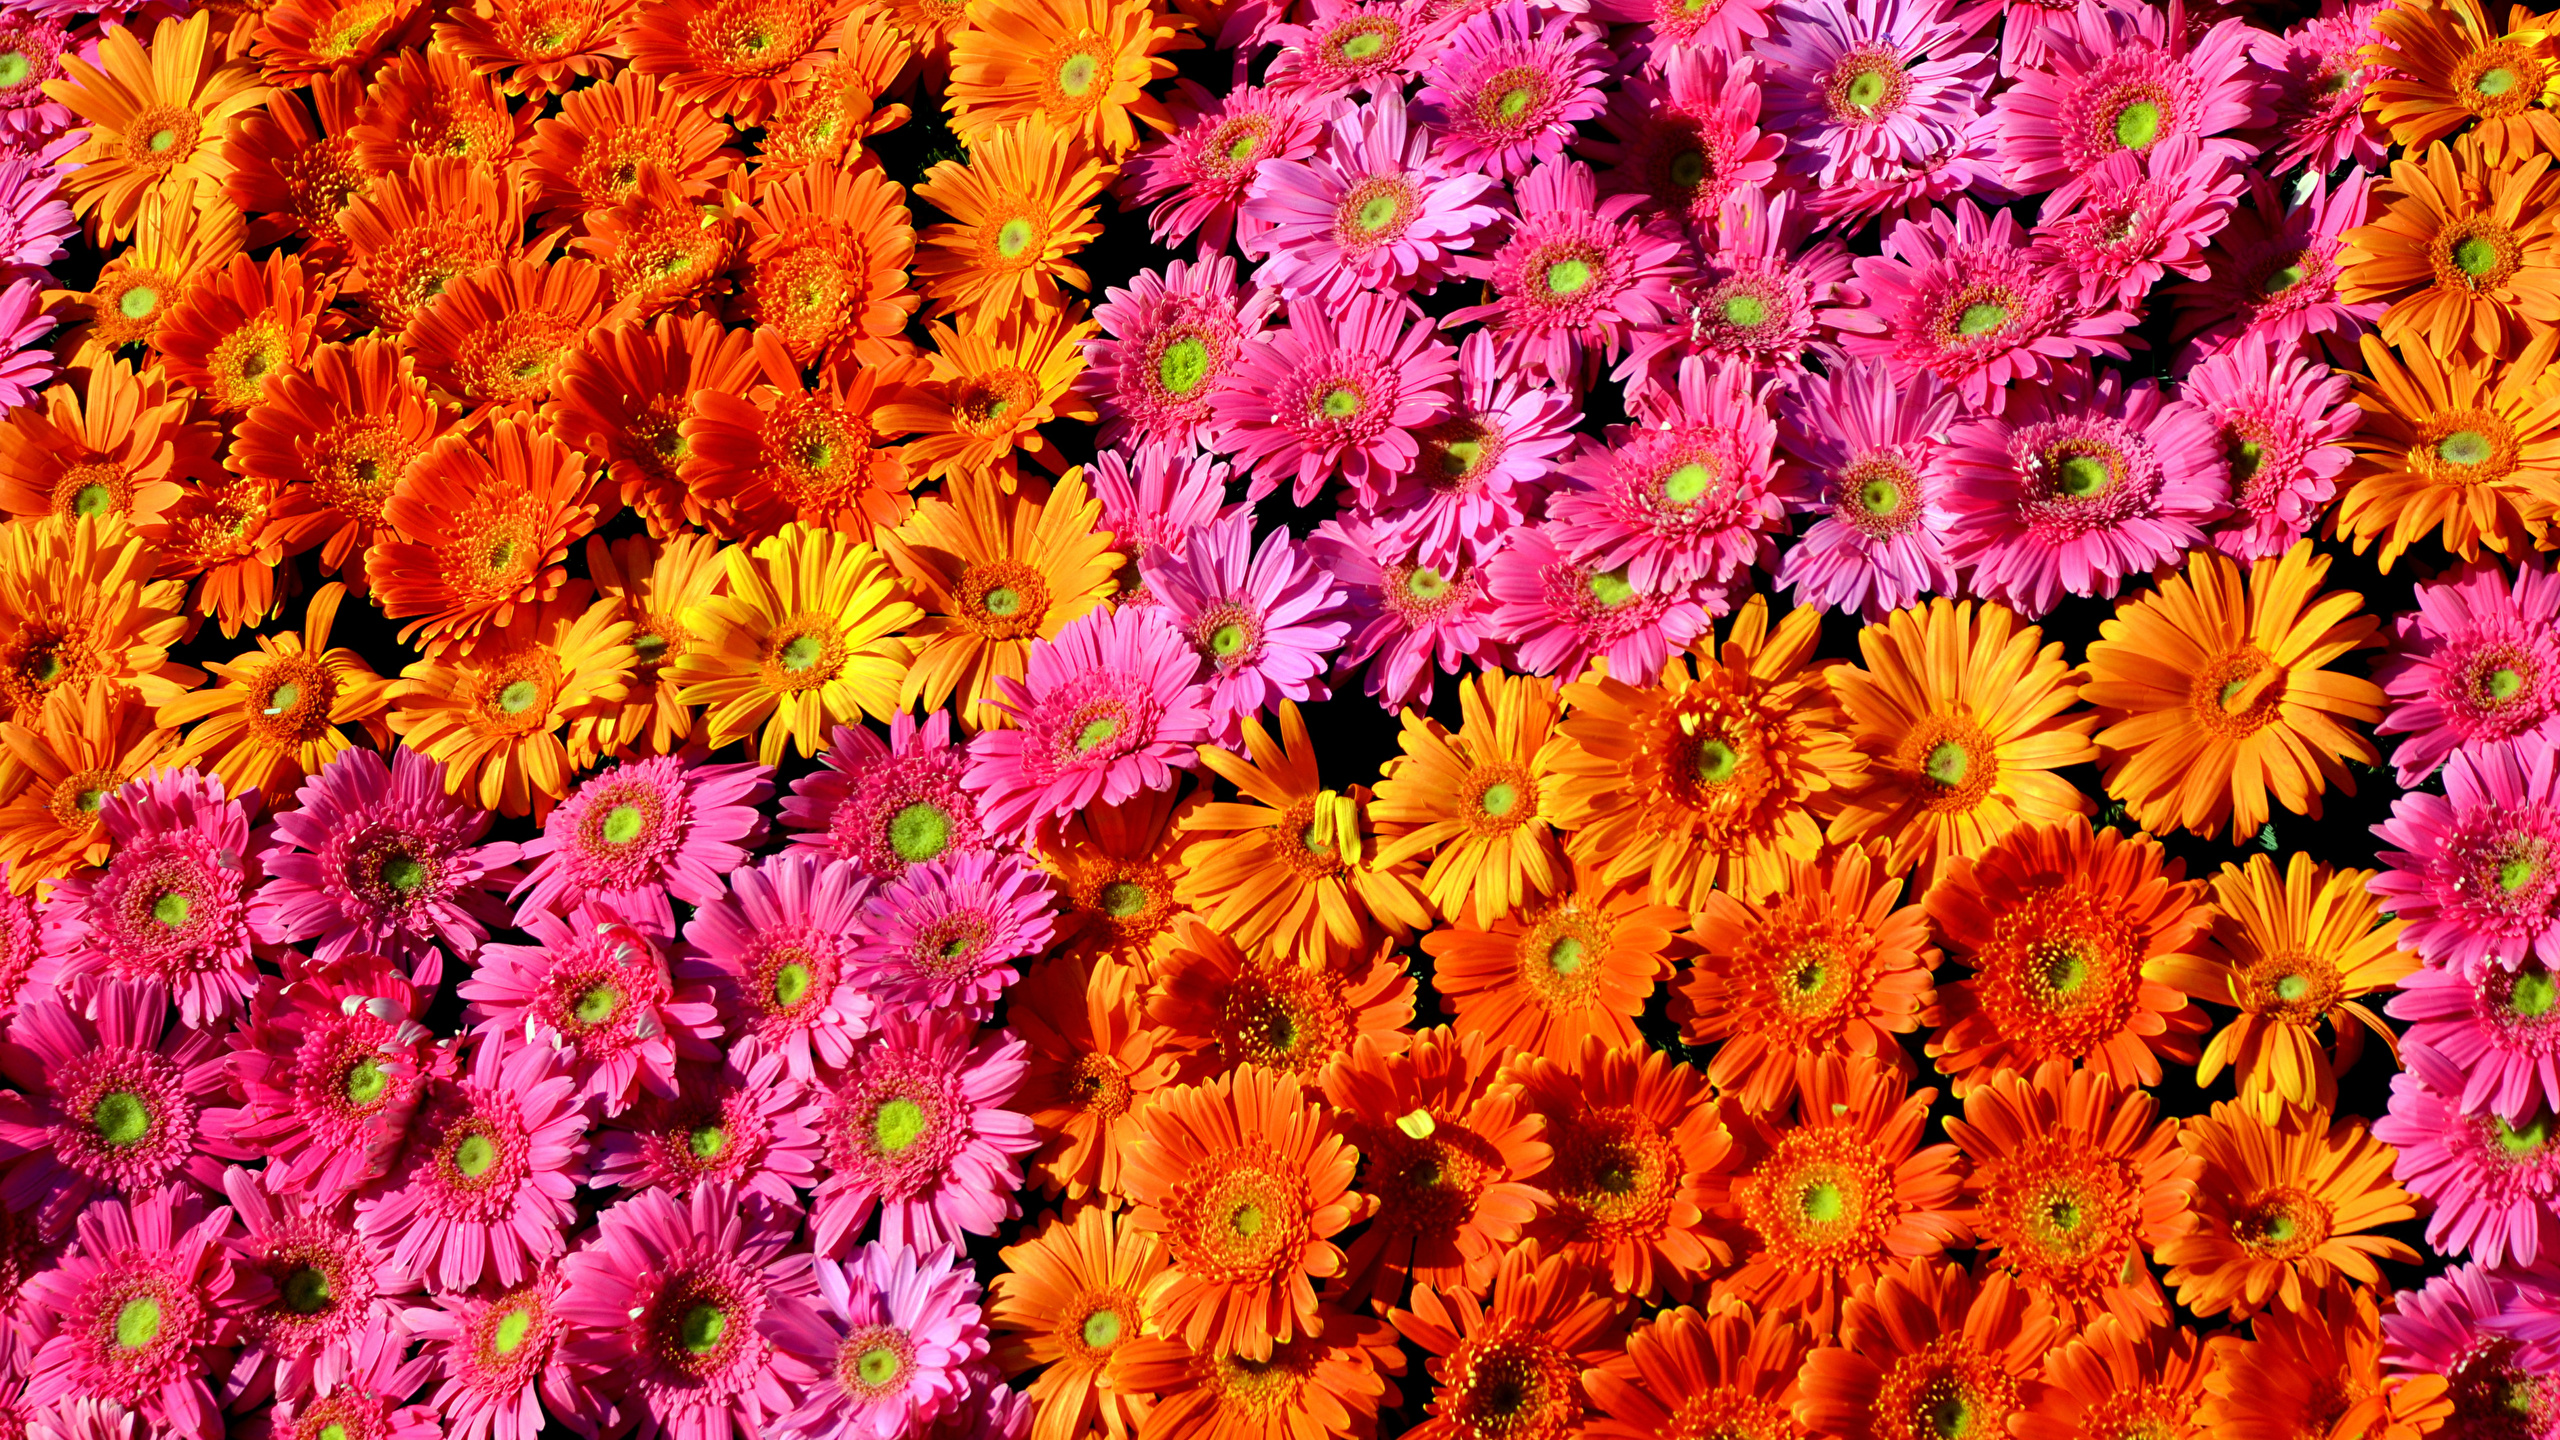 壁紙 2560x1440 ガーベラ たくさん テクスチャー カラフルな 花 ダウンロード 写真